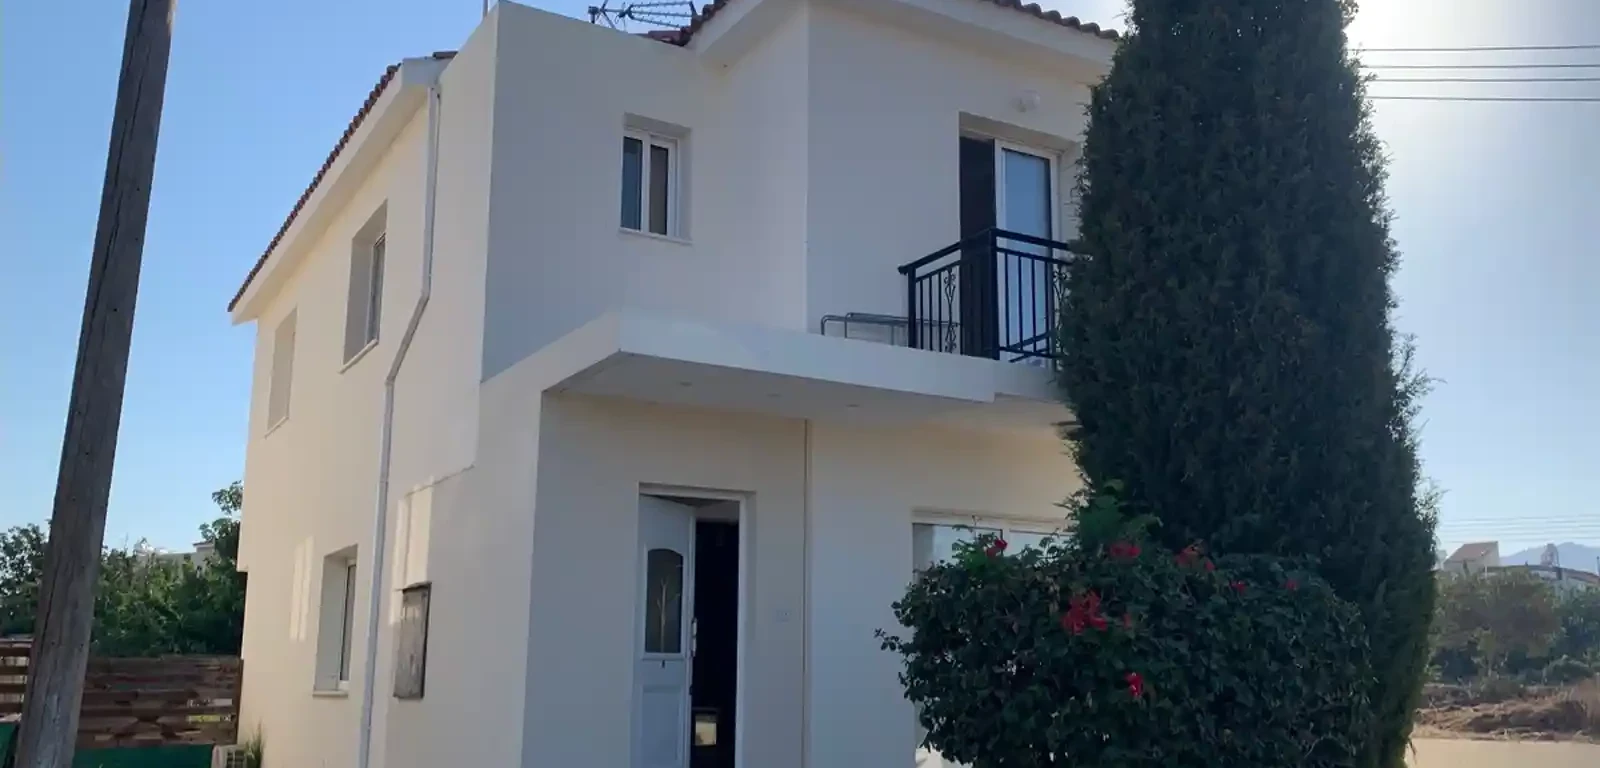 3-bedroom villa to rent €1.200, image 1